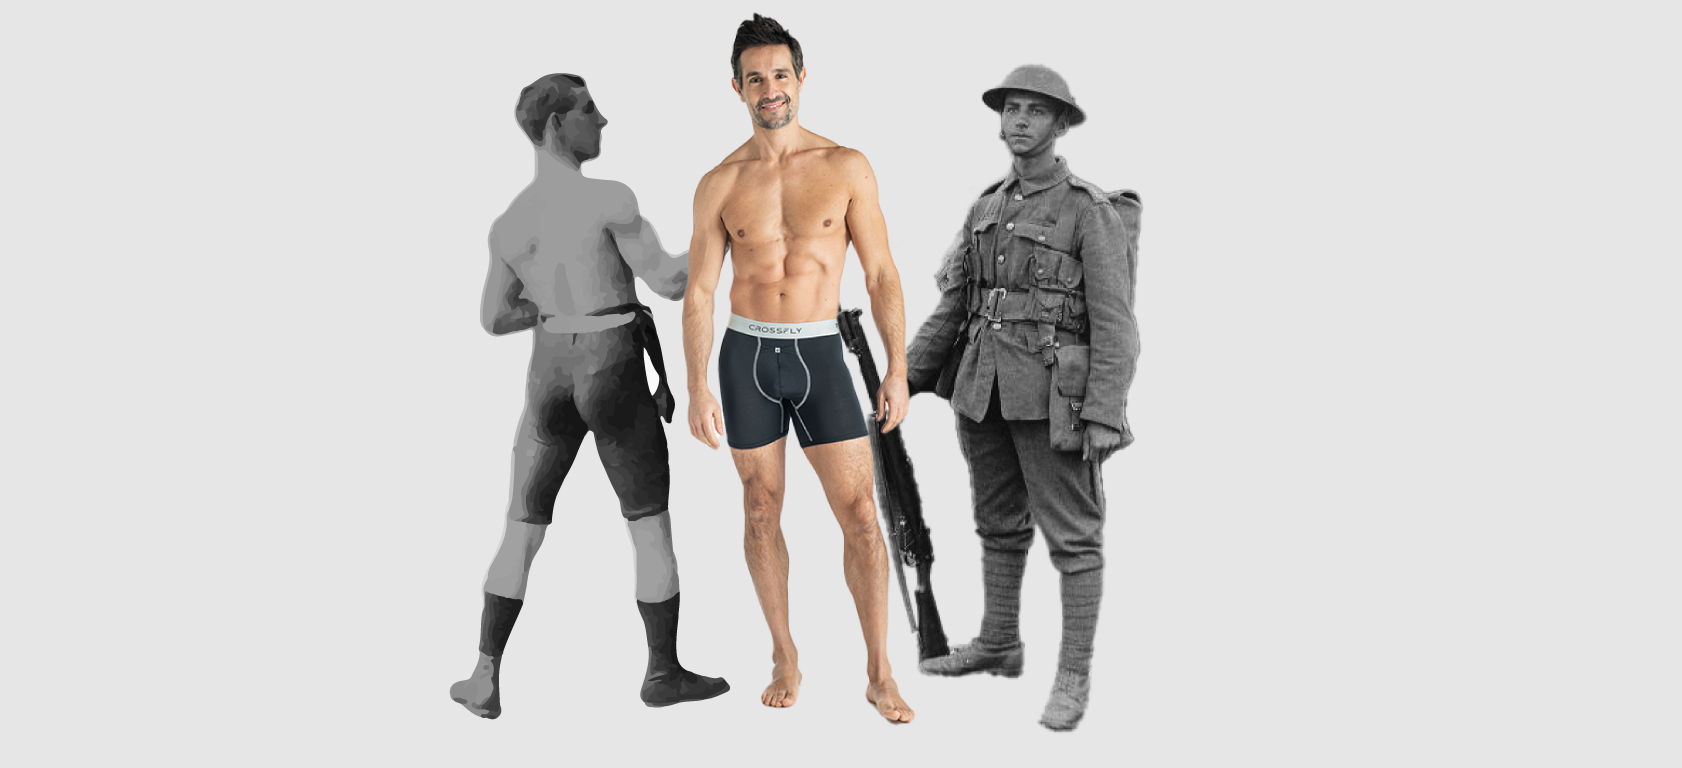 A Brief History of Men's Underwear